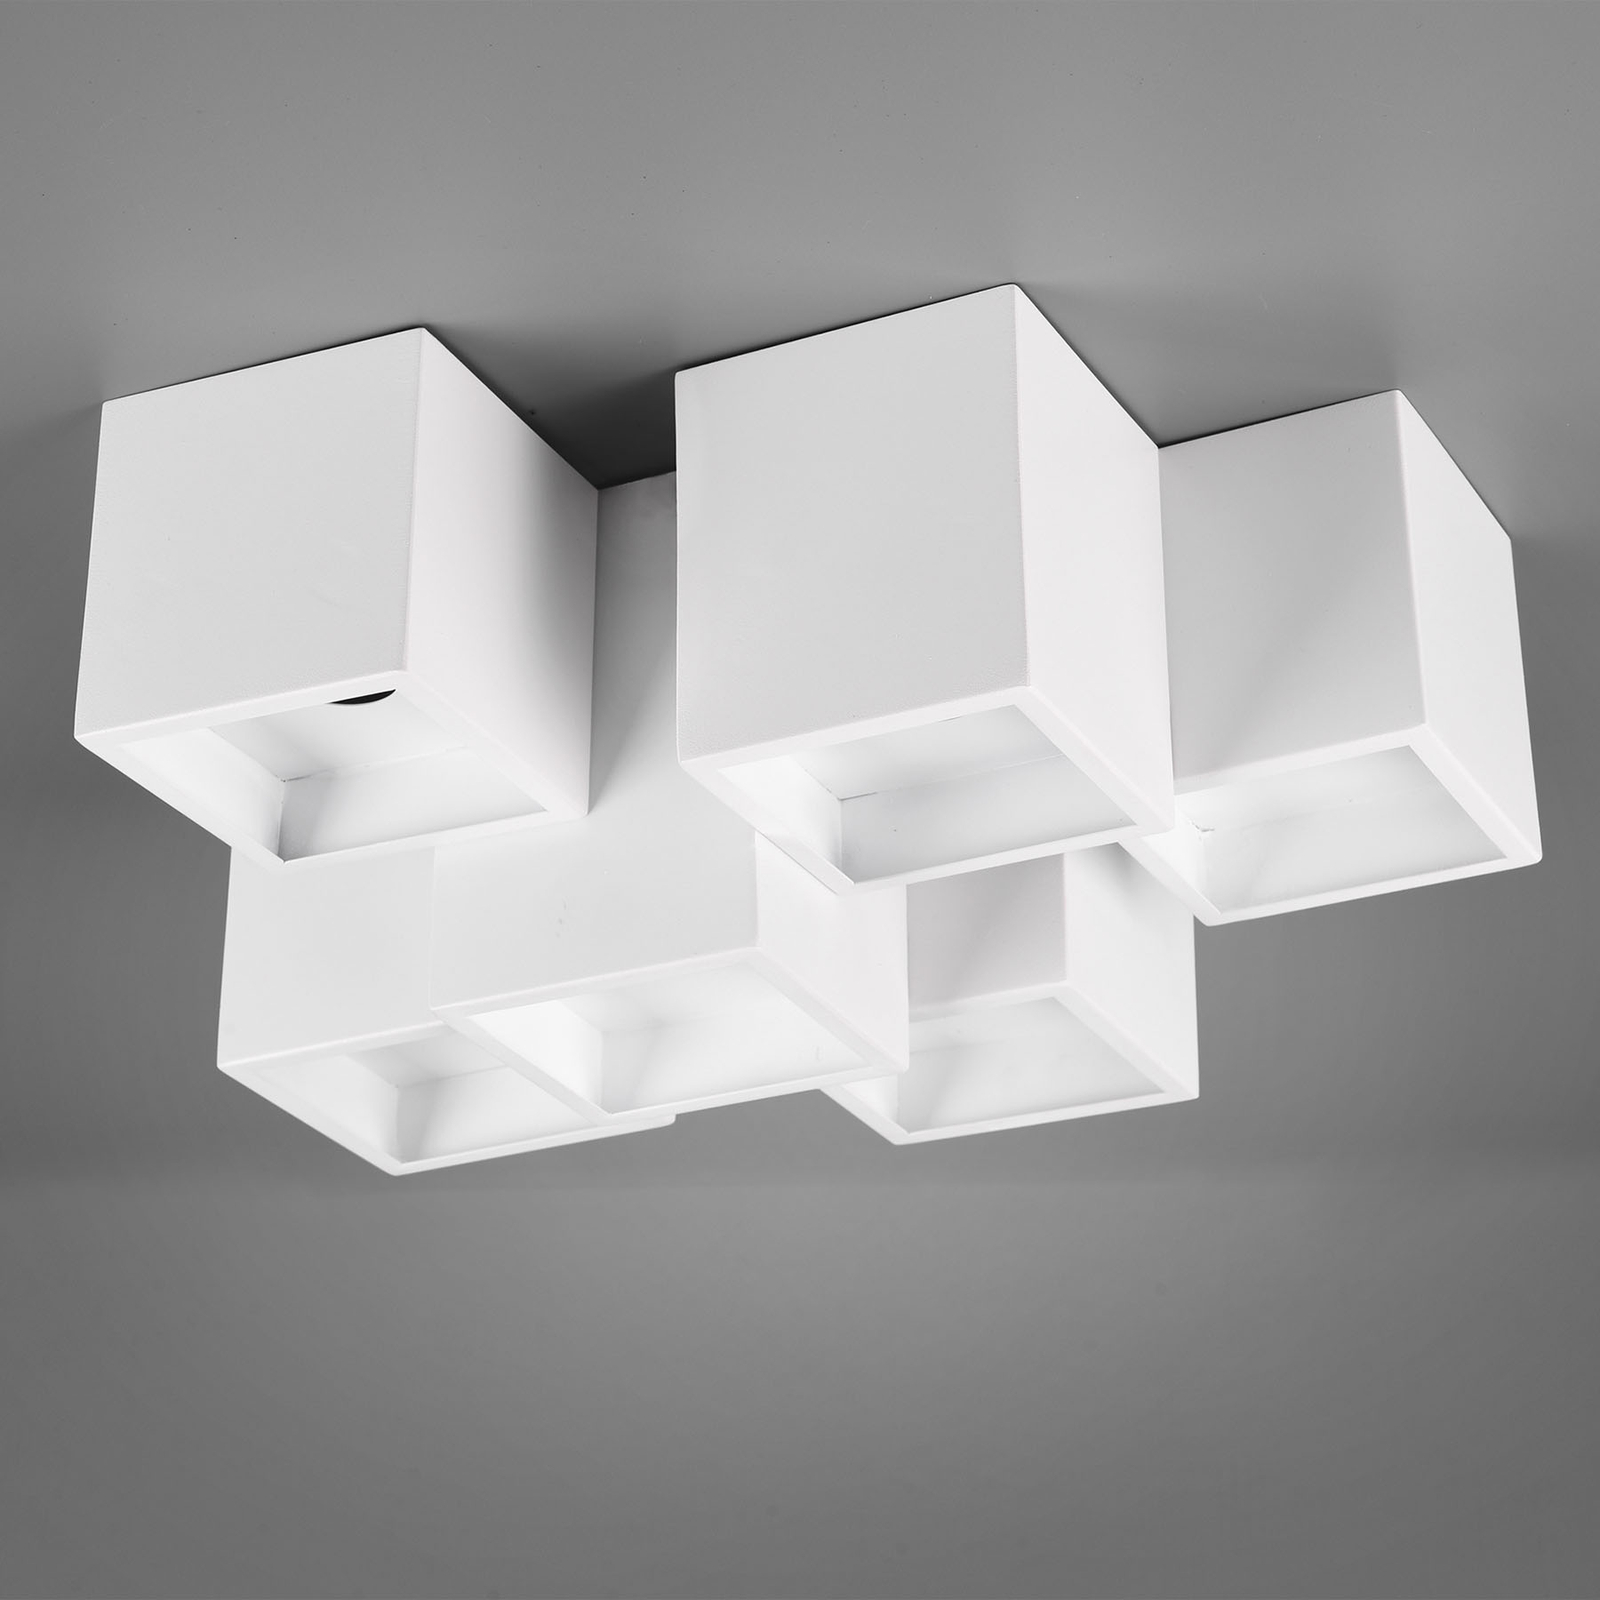 Fernando ceiling light, 6-bulb, matt white